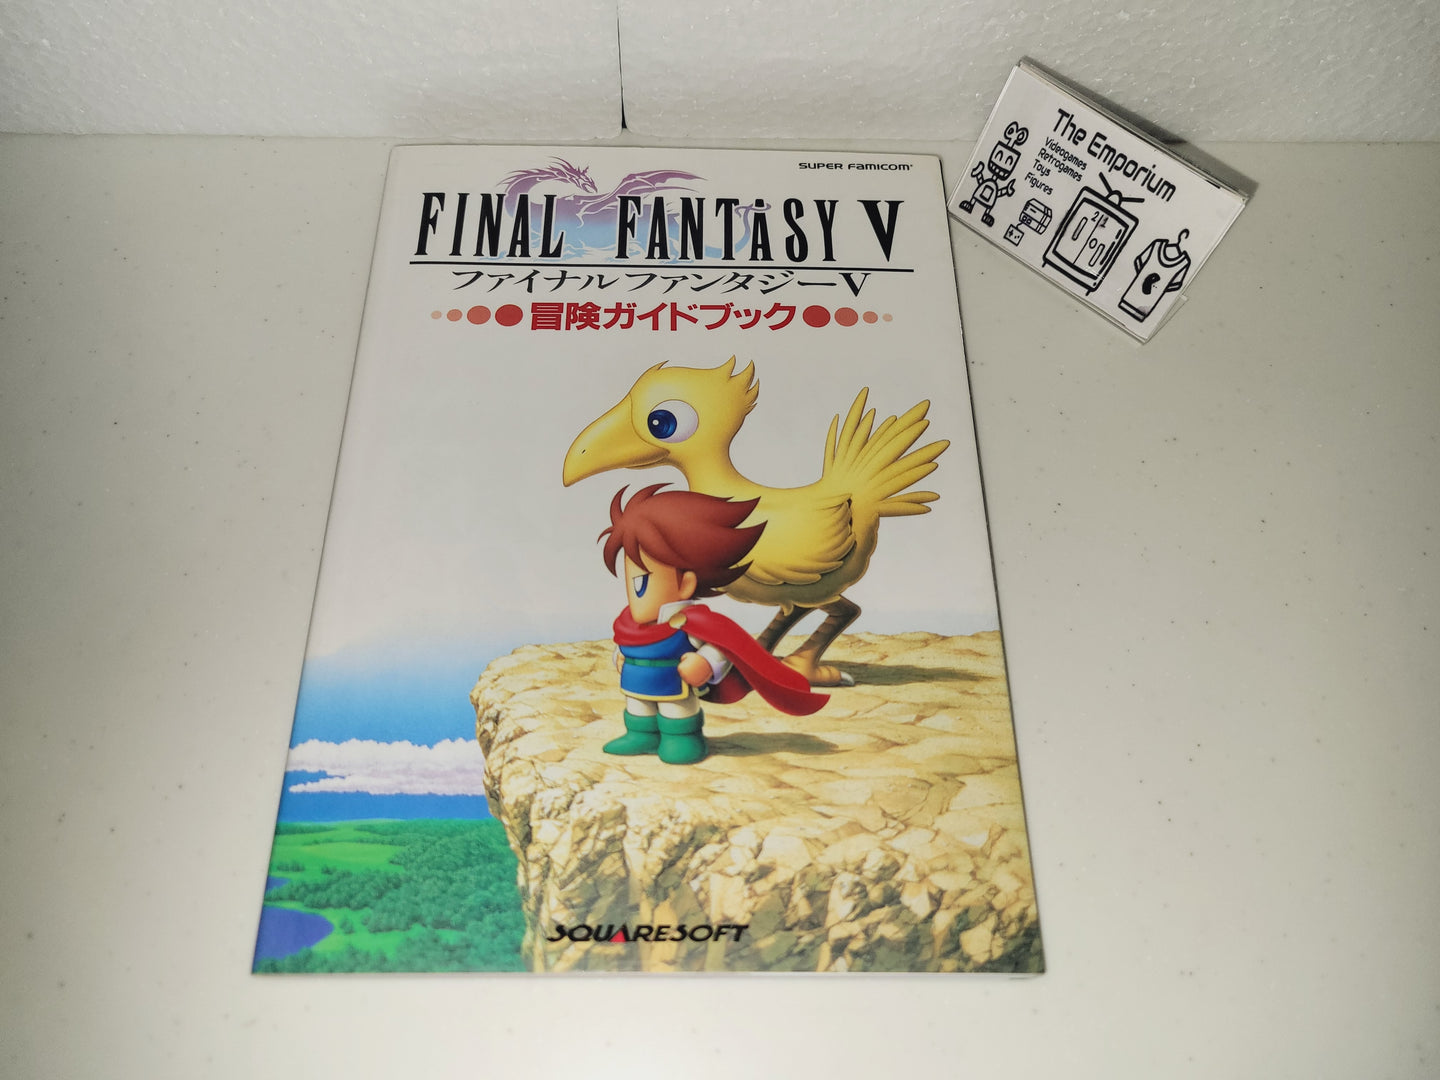 michela - Final Fantasy V Adventure guidebook  - book